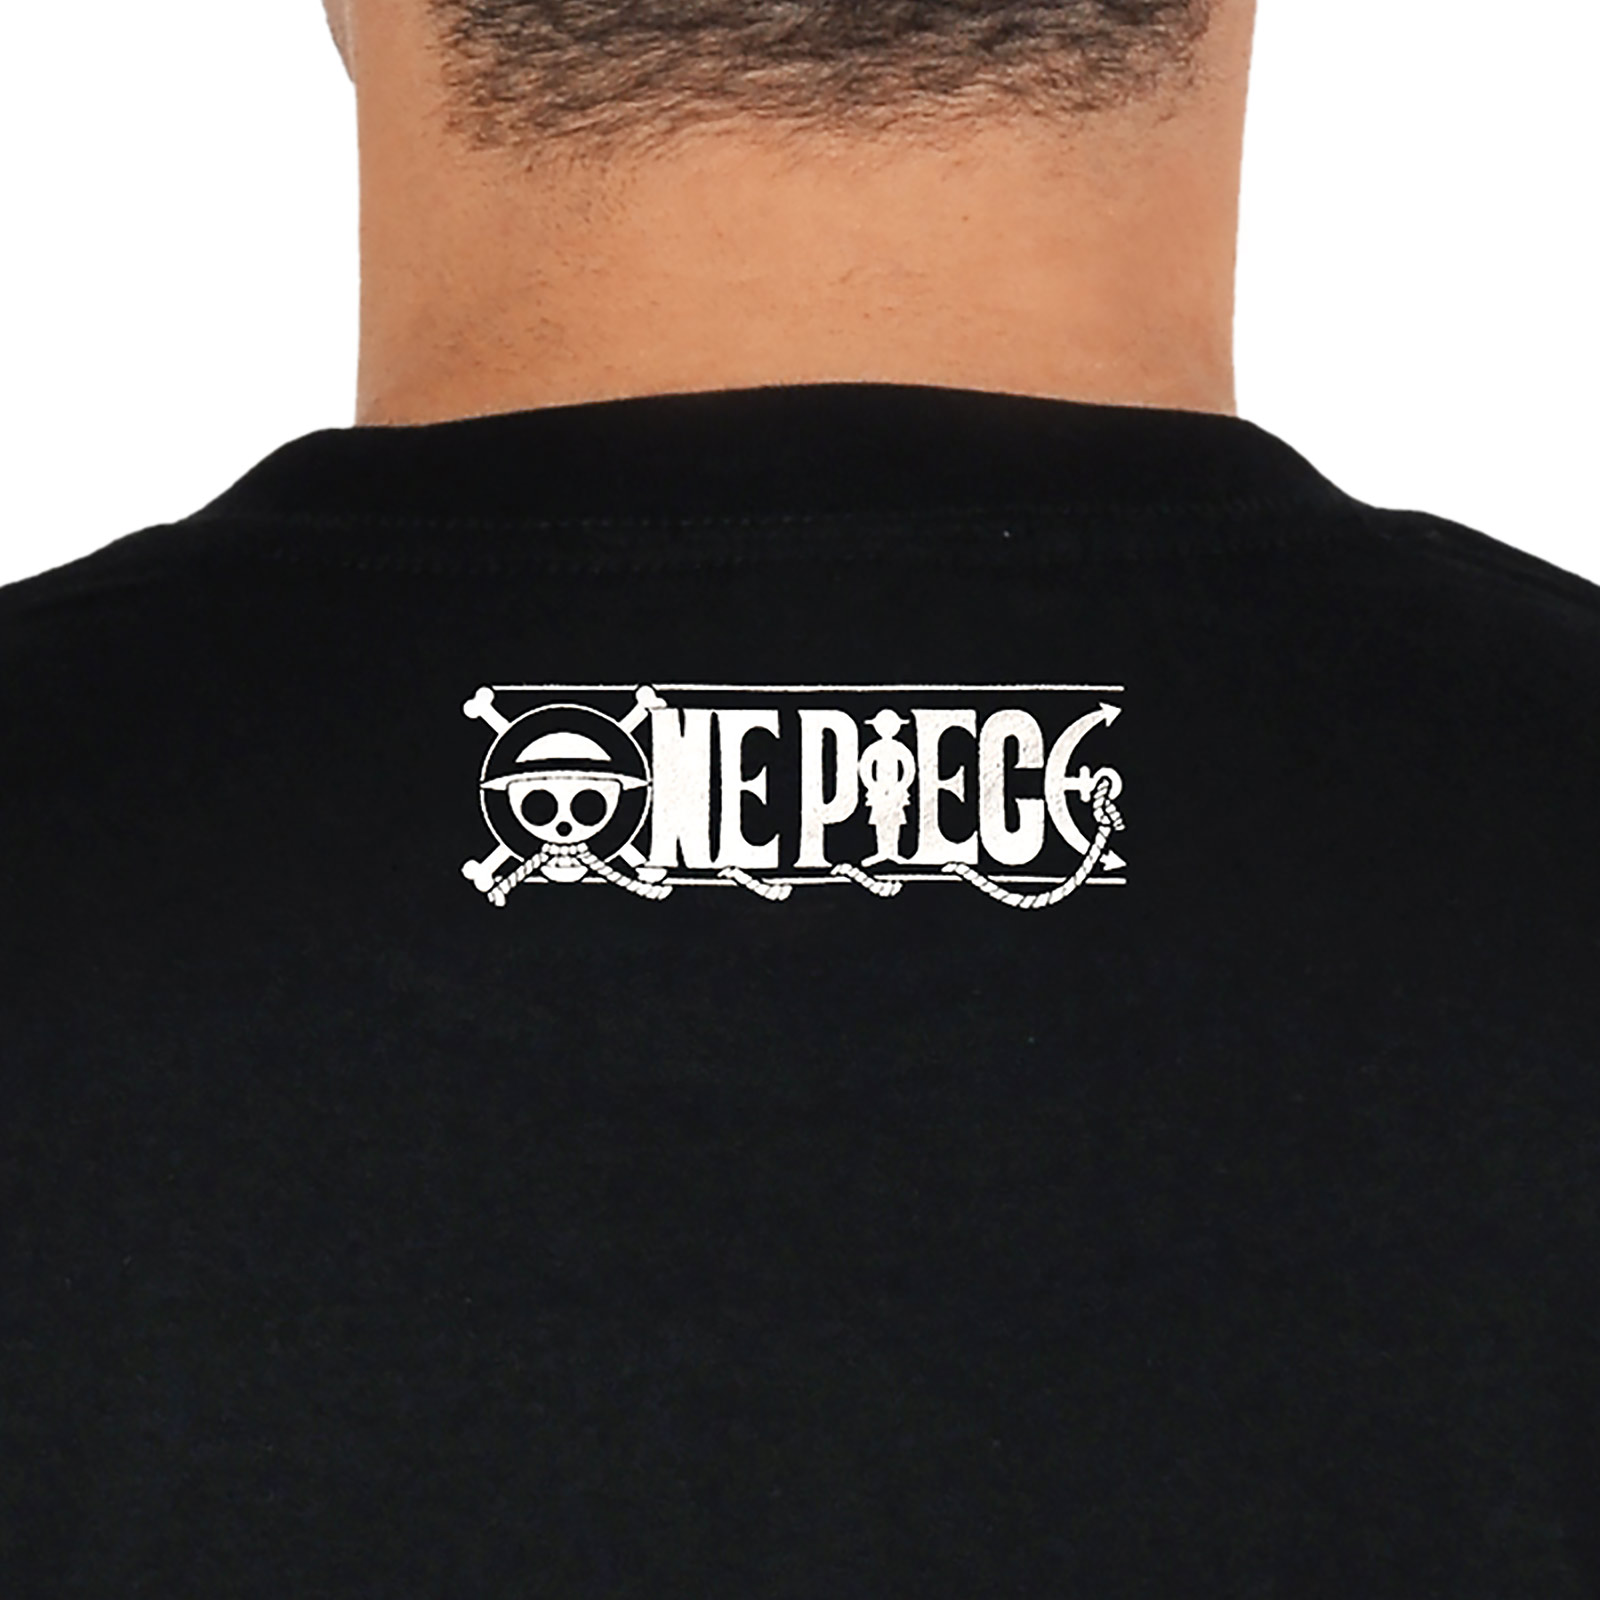 One Piece - Skull T-Shirt schwarz